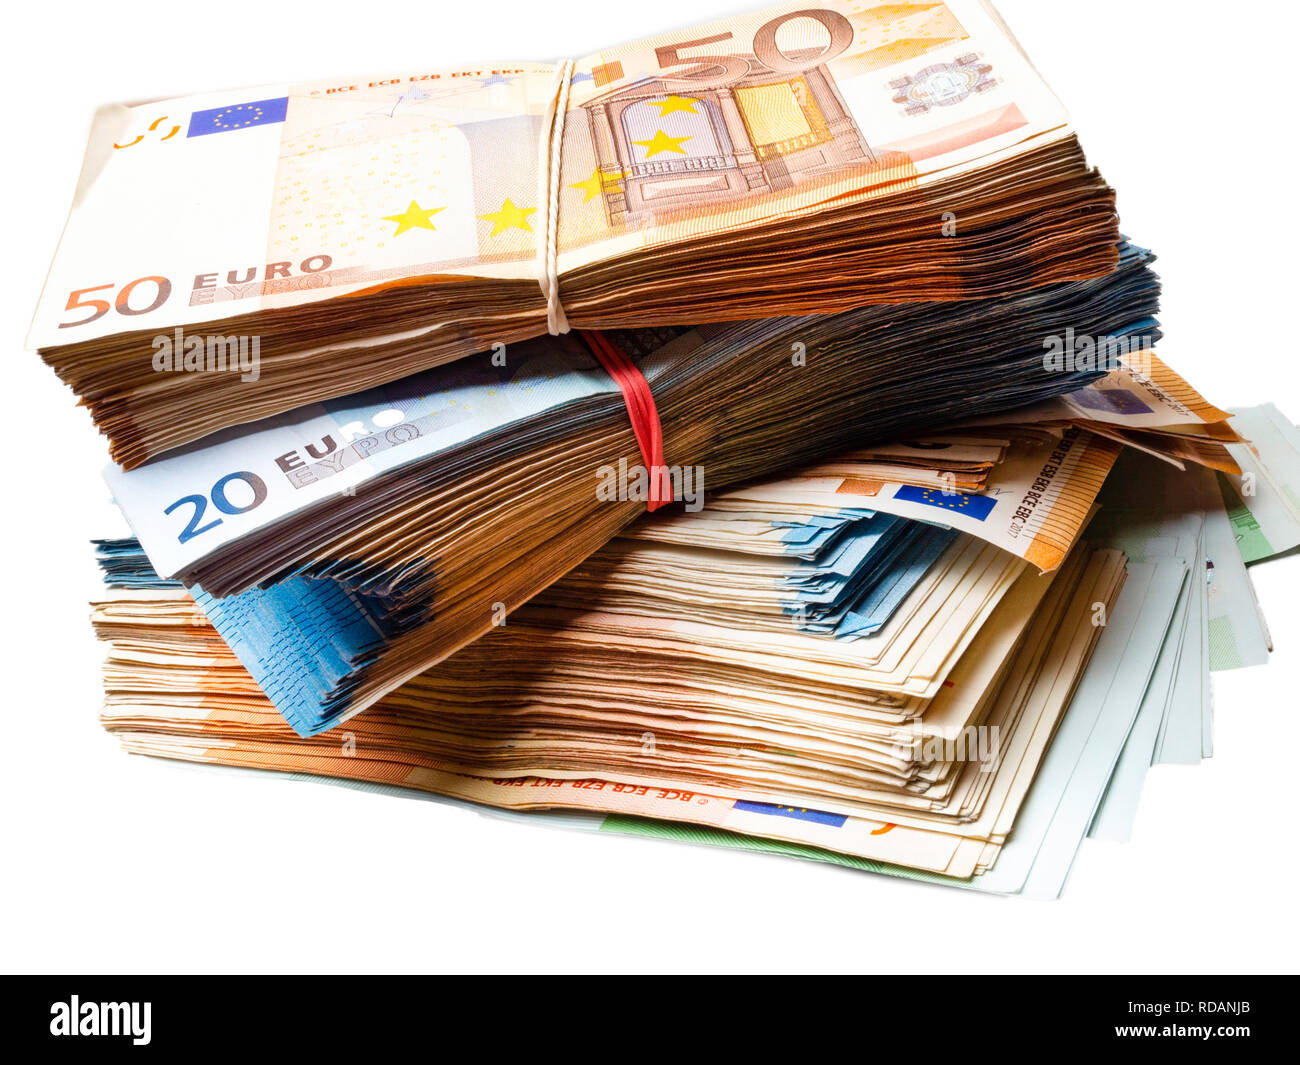 Tiền châu Âu – Bạn đã bao giờ nghĩ đến việc du lịch và mua sắm nơi một quốc gia sử dụng đồng tiền châu Âu chưa? Chúng tôi có những hình ảnh đẹp mắt về các đồng tiền châu Âu, từ euro đến bảng Anh, để giúp bạn hình dung.